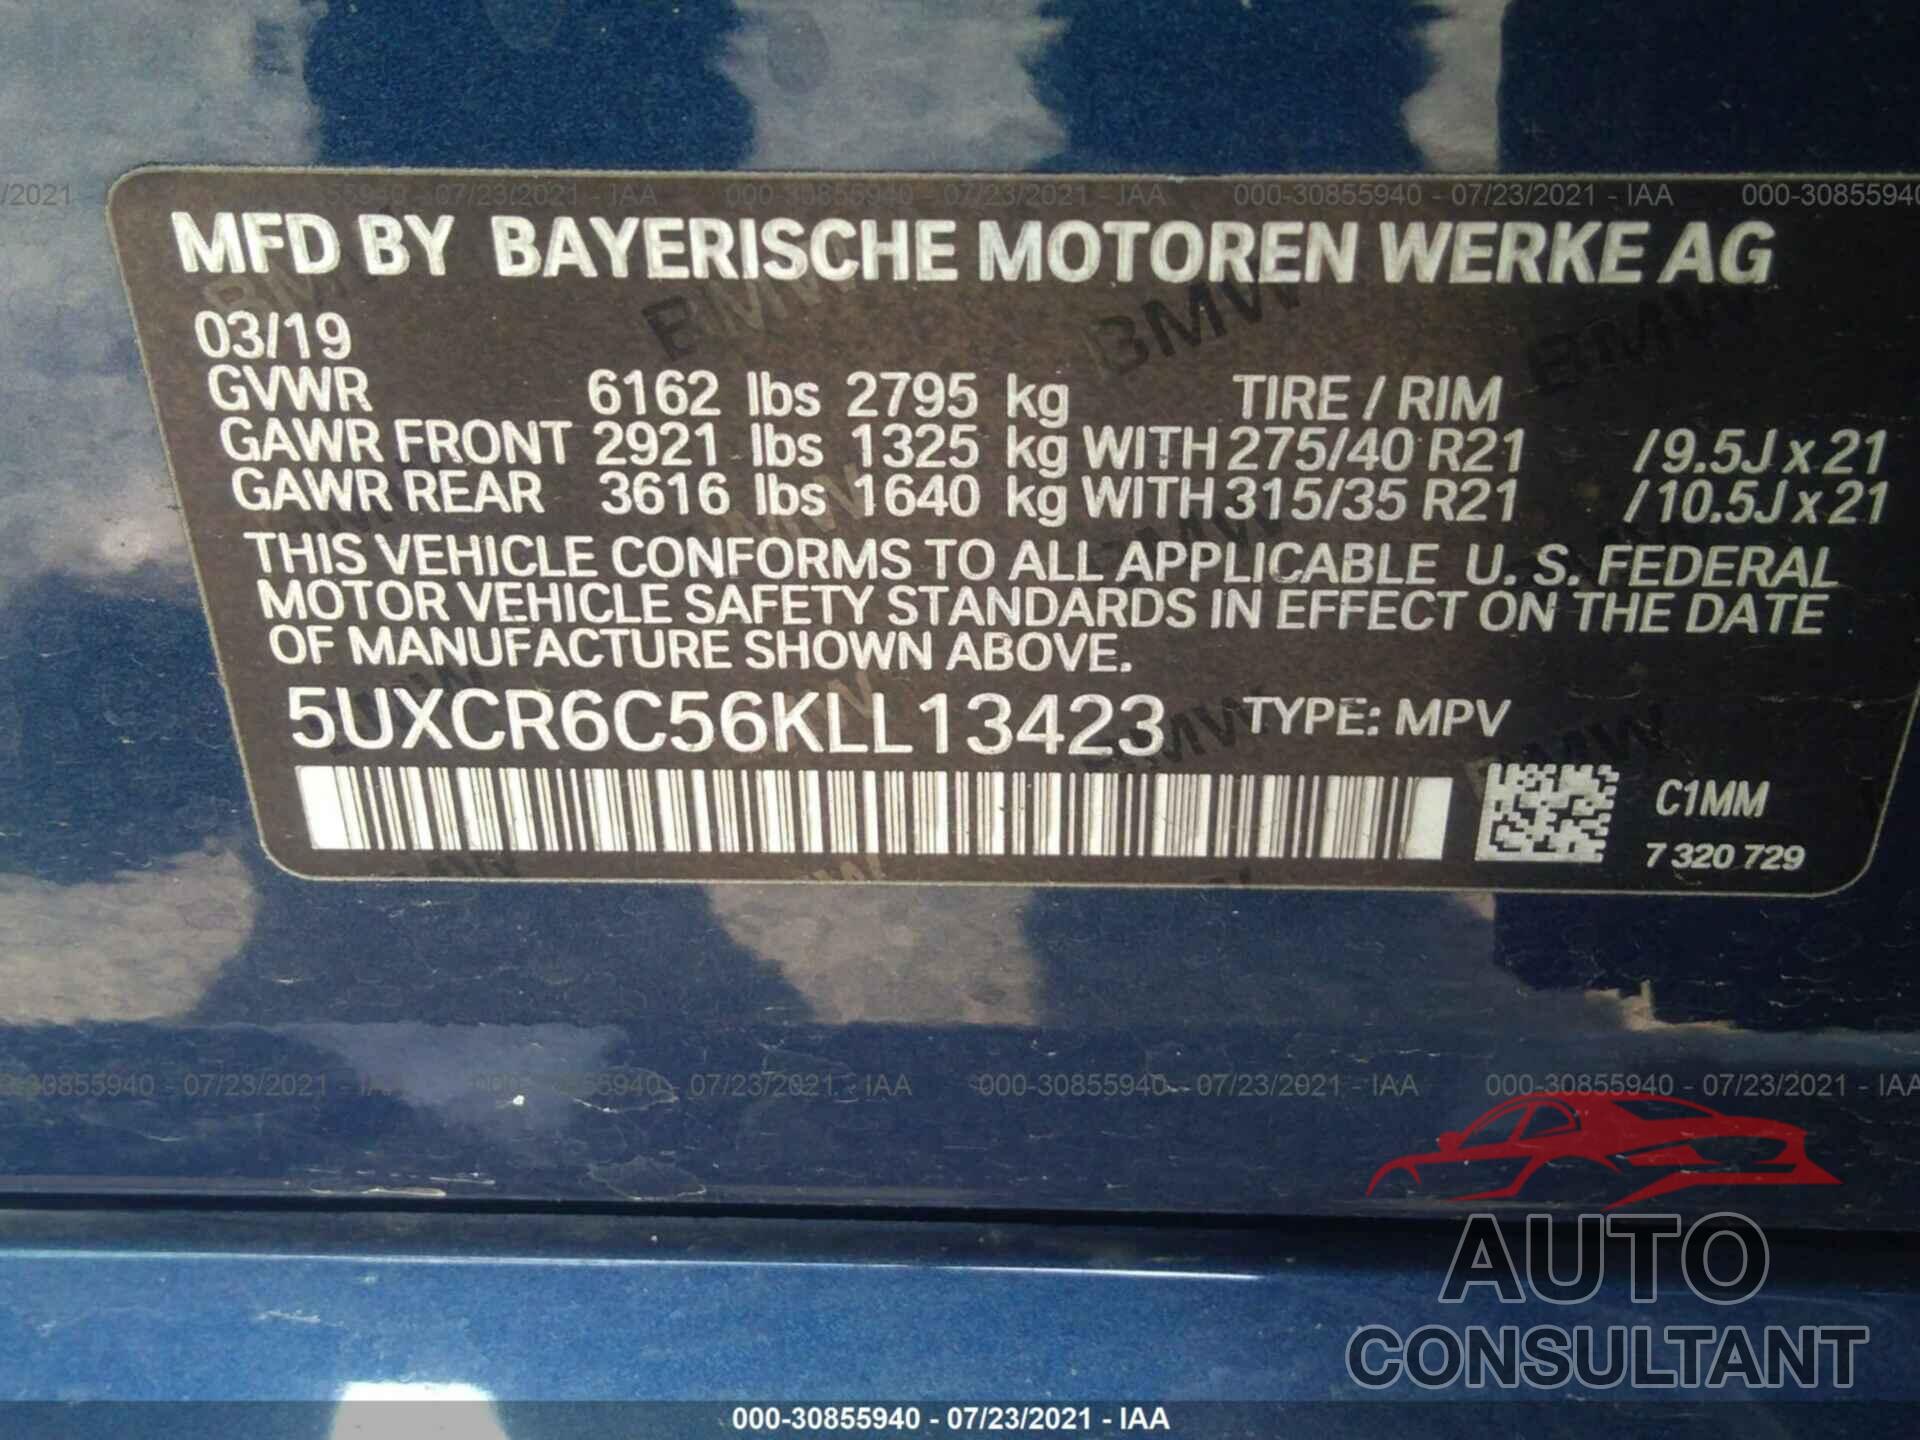 BMW X5 2019 - 5UXCR6C56KLL13423